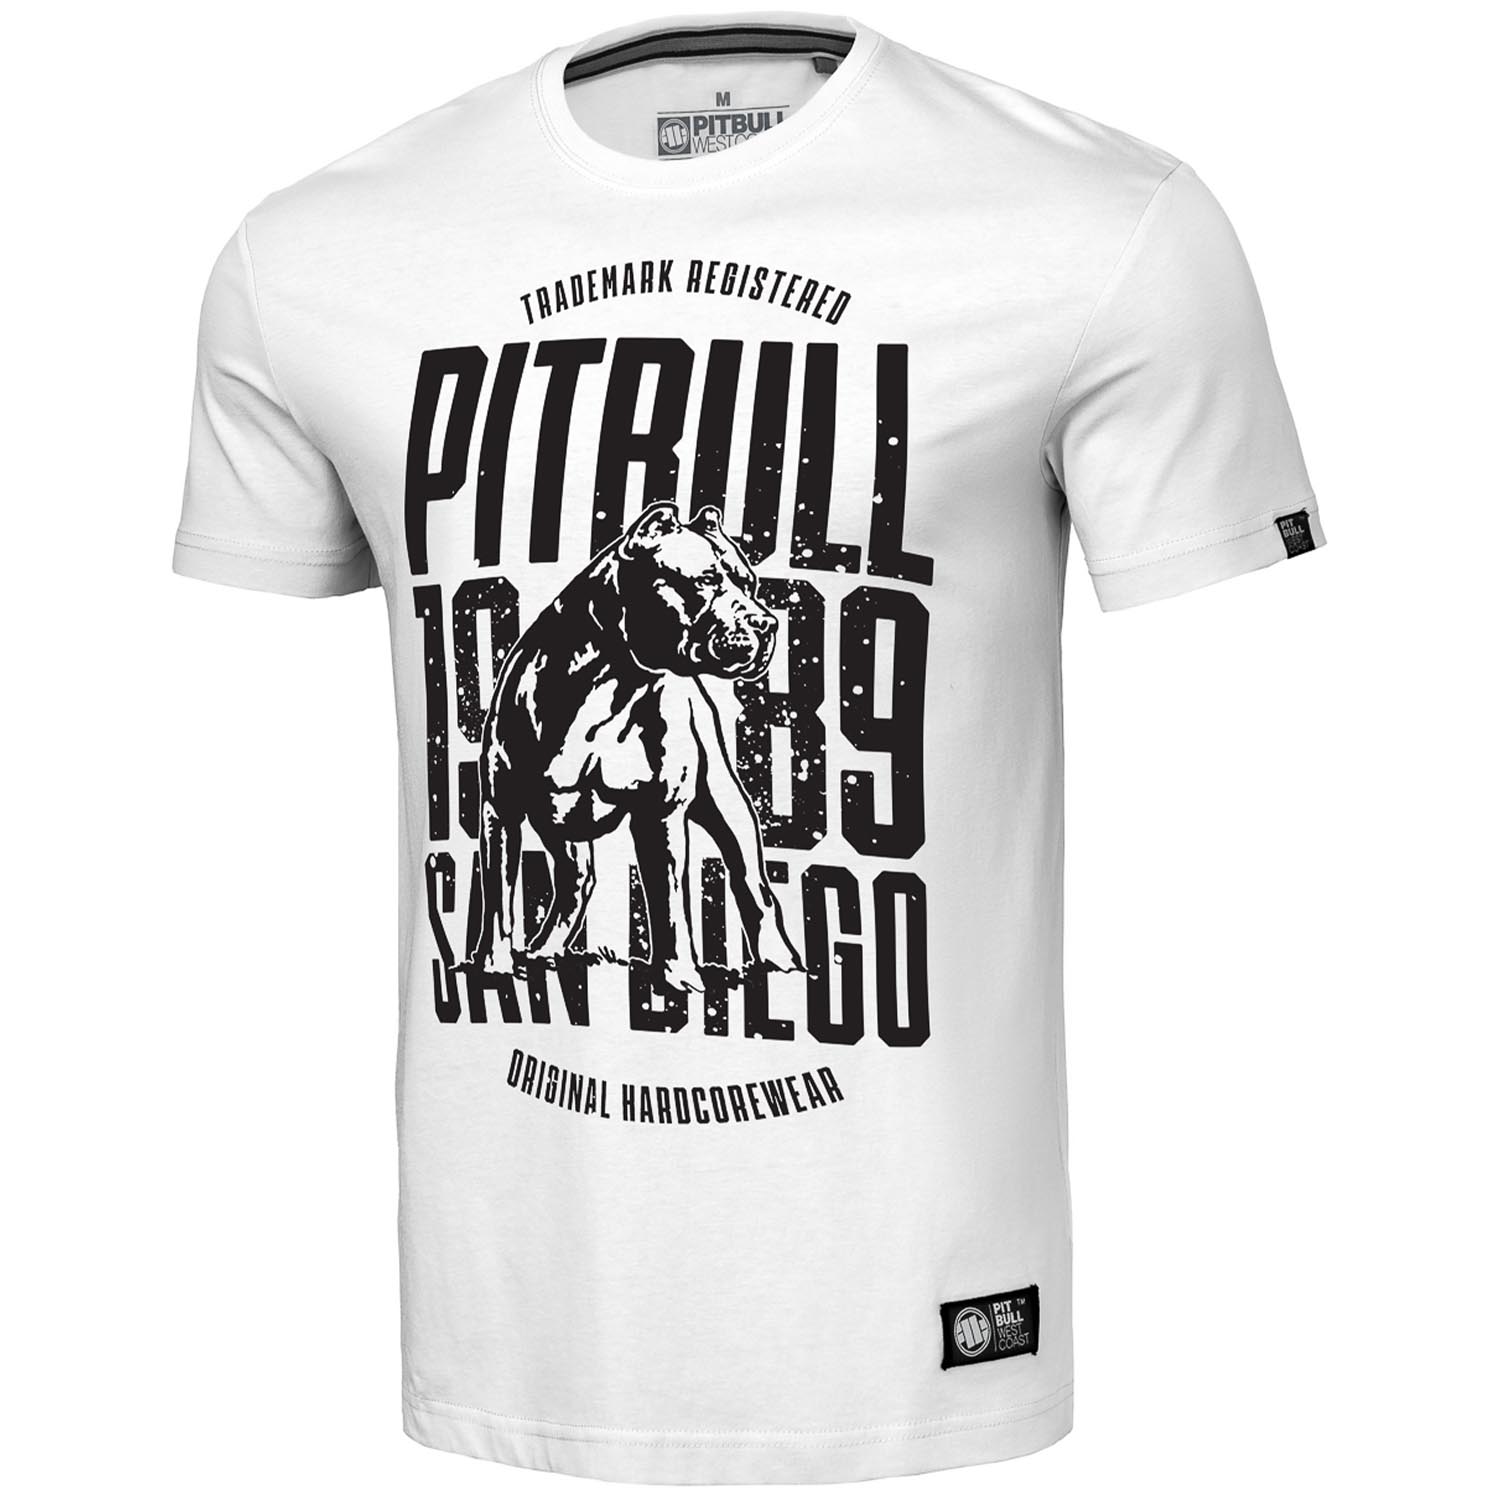 Pit Bull West Coast T-Shirt, San Diego Dog, weiß